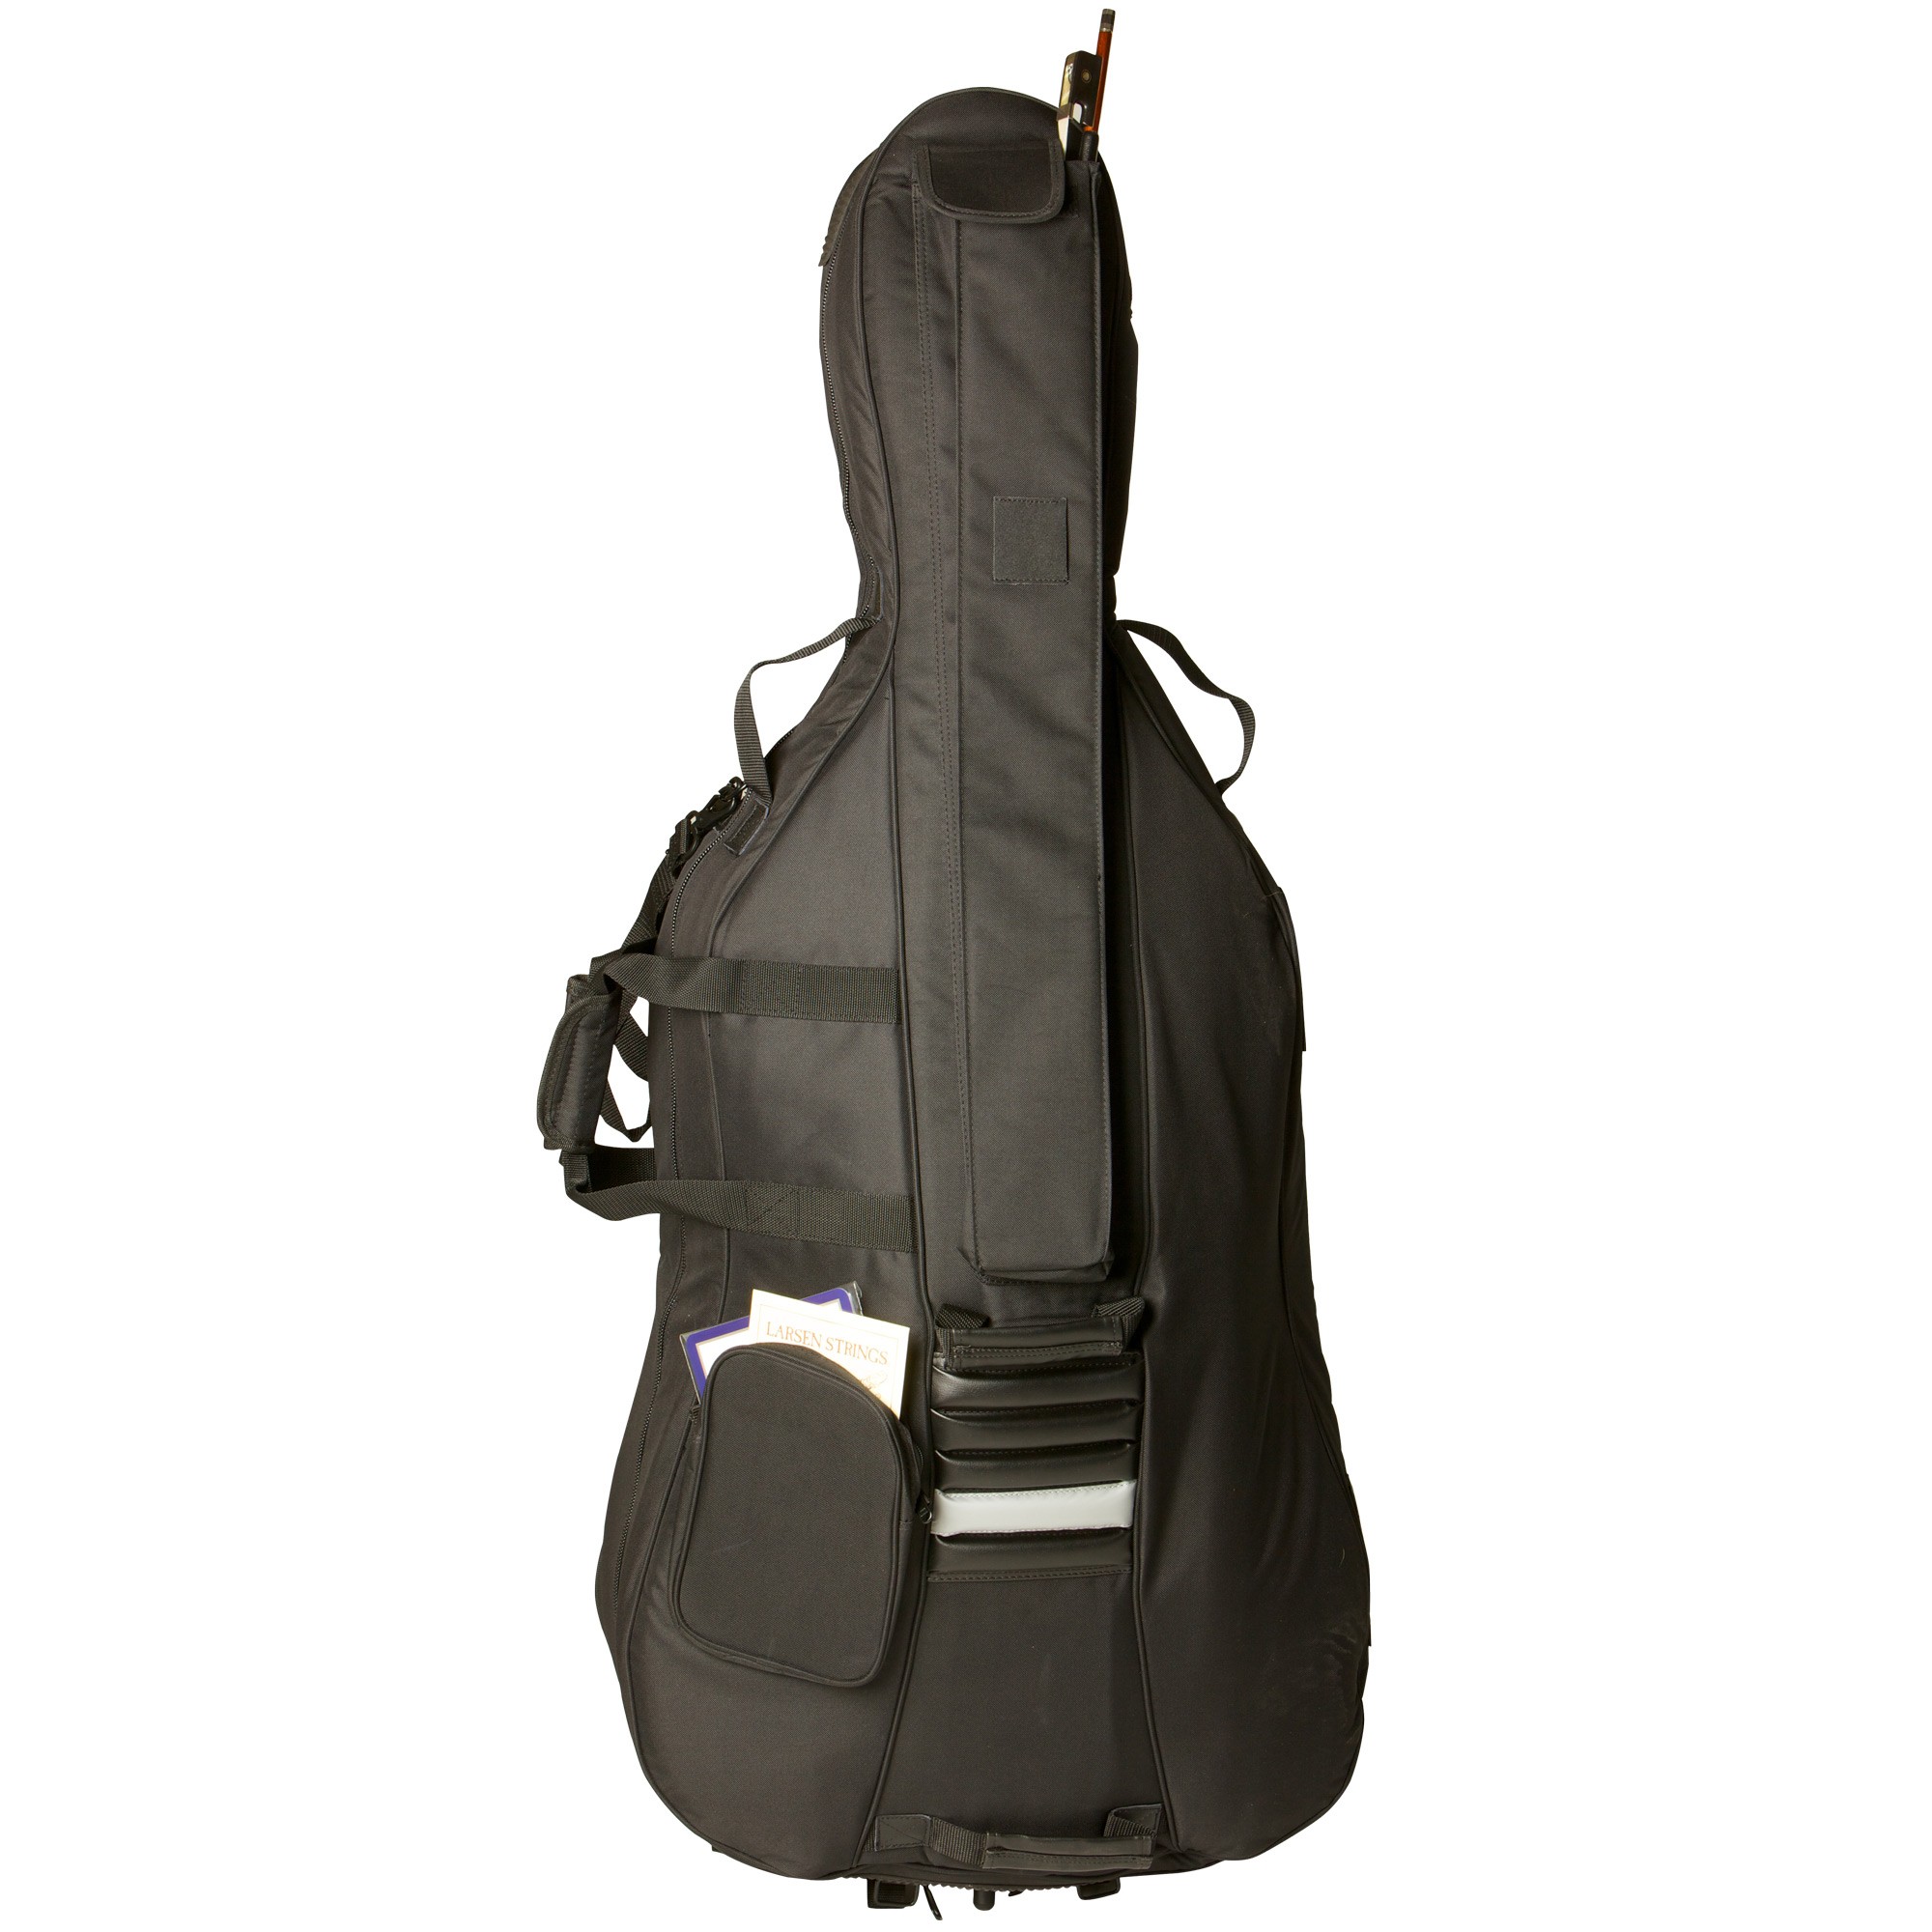 Atlas Cello Bag